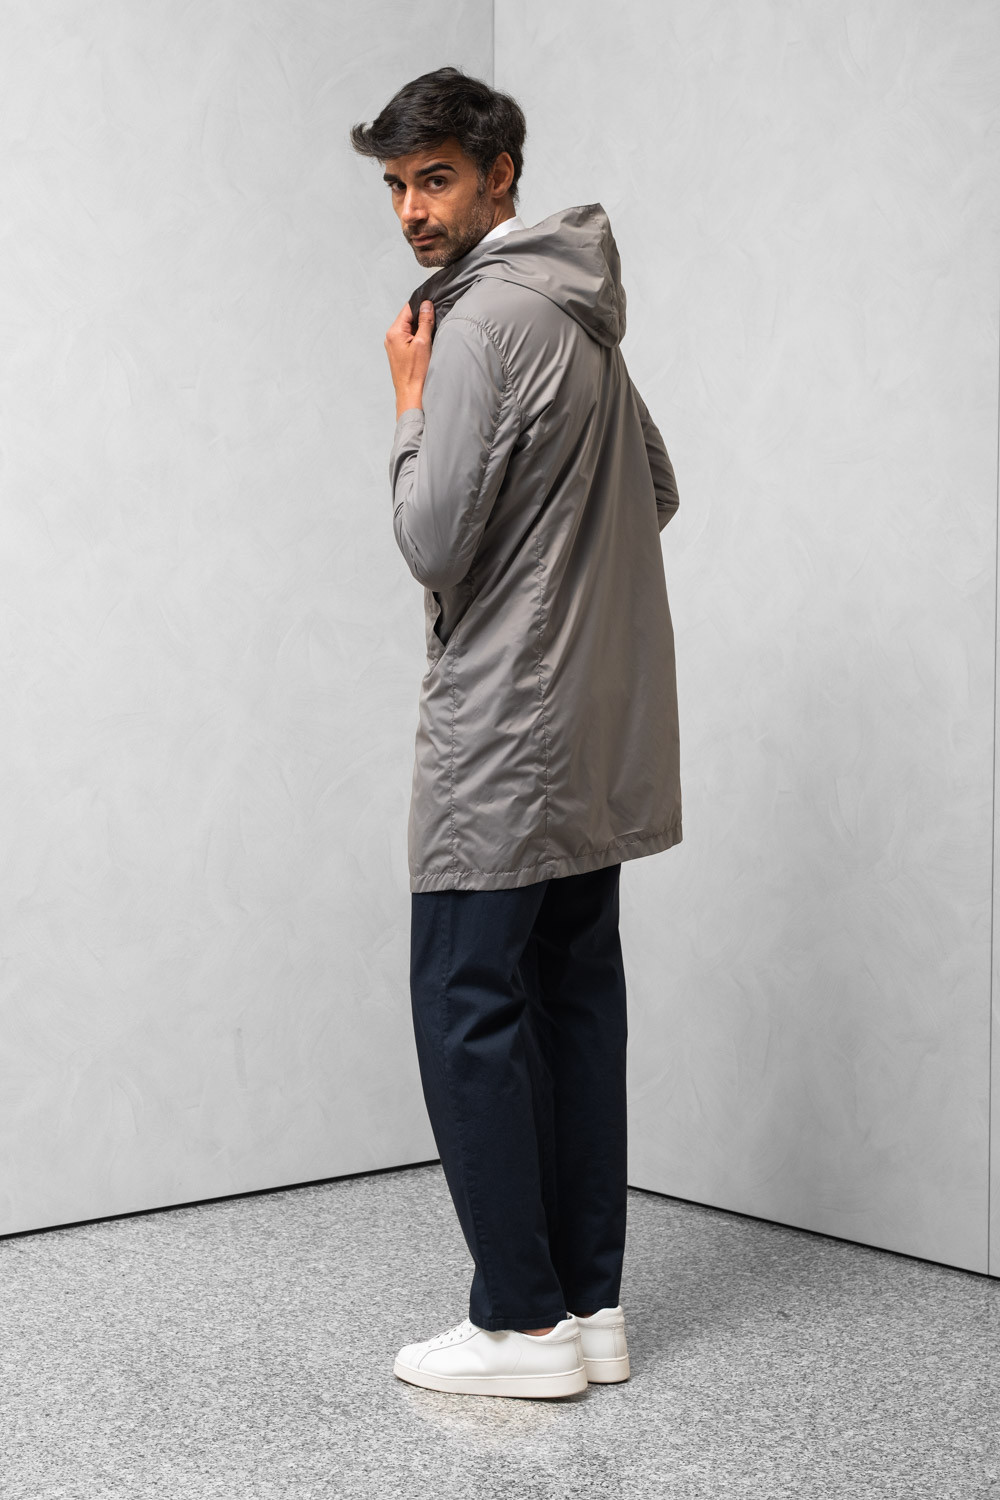 Cappotto idrorepellente uomo cappuccio tasca porta cappotto marrone 0909 PARDO-118